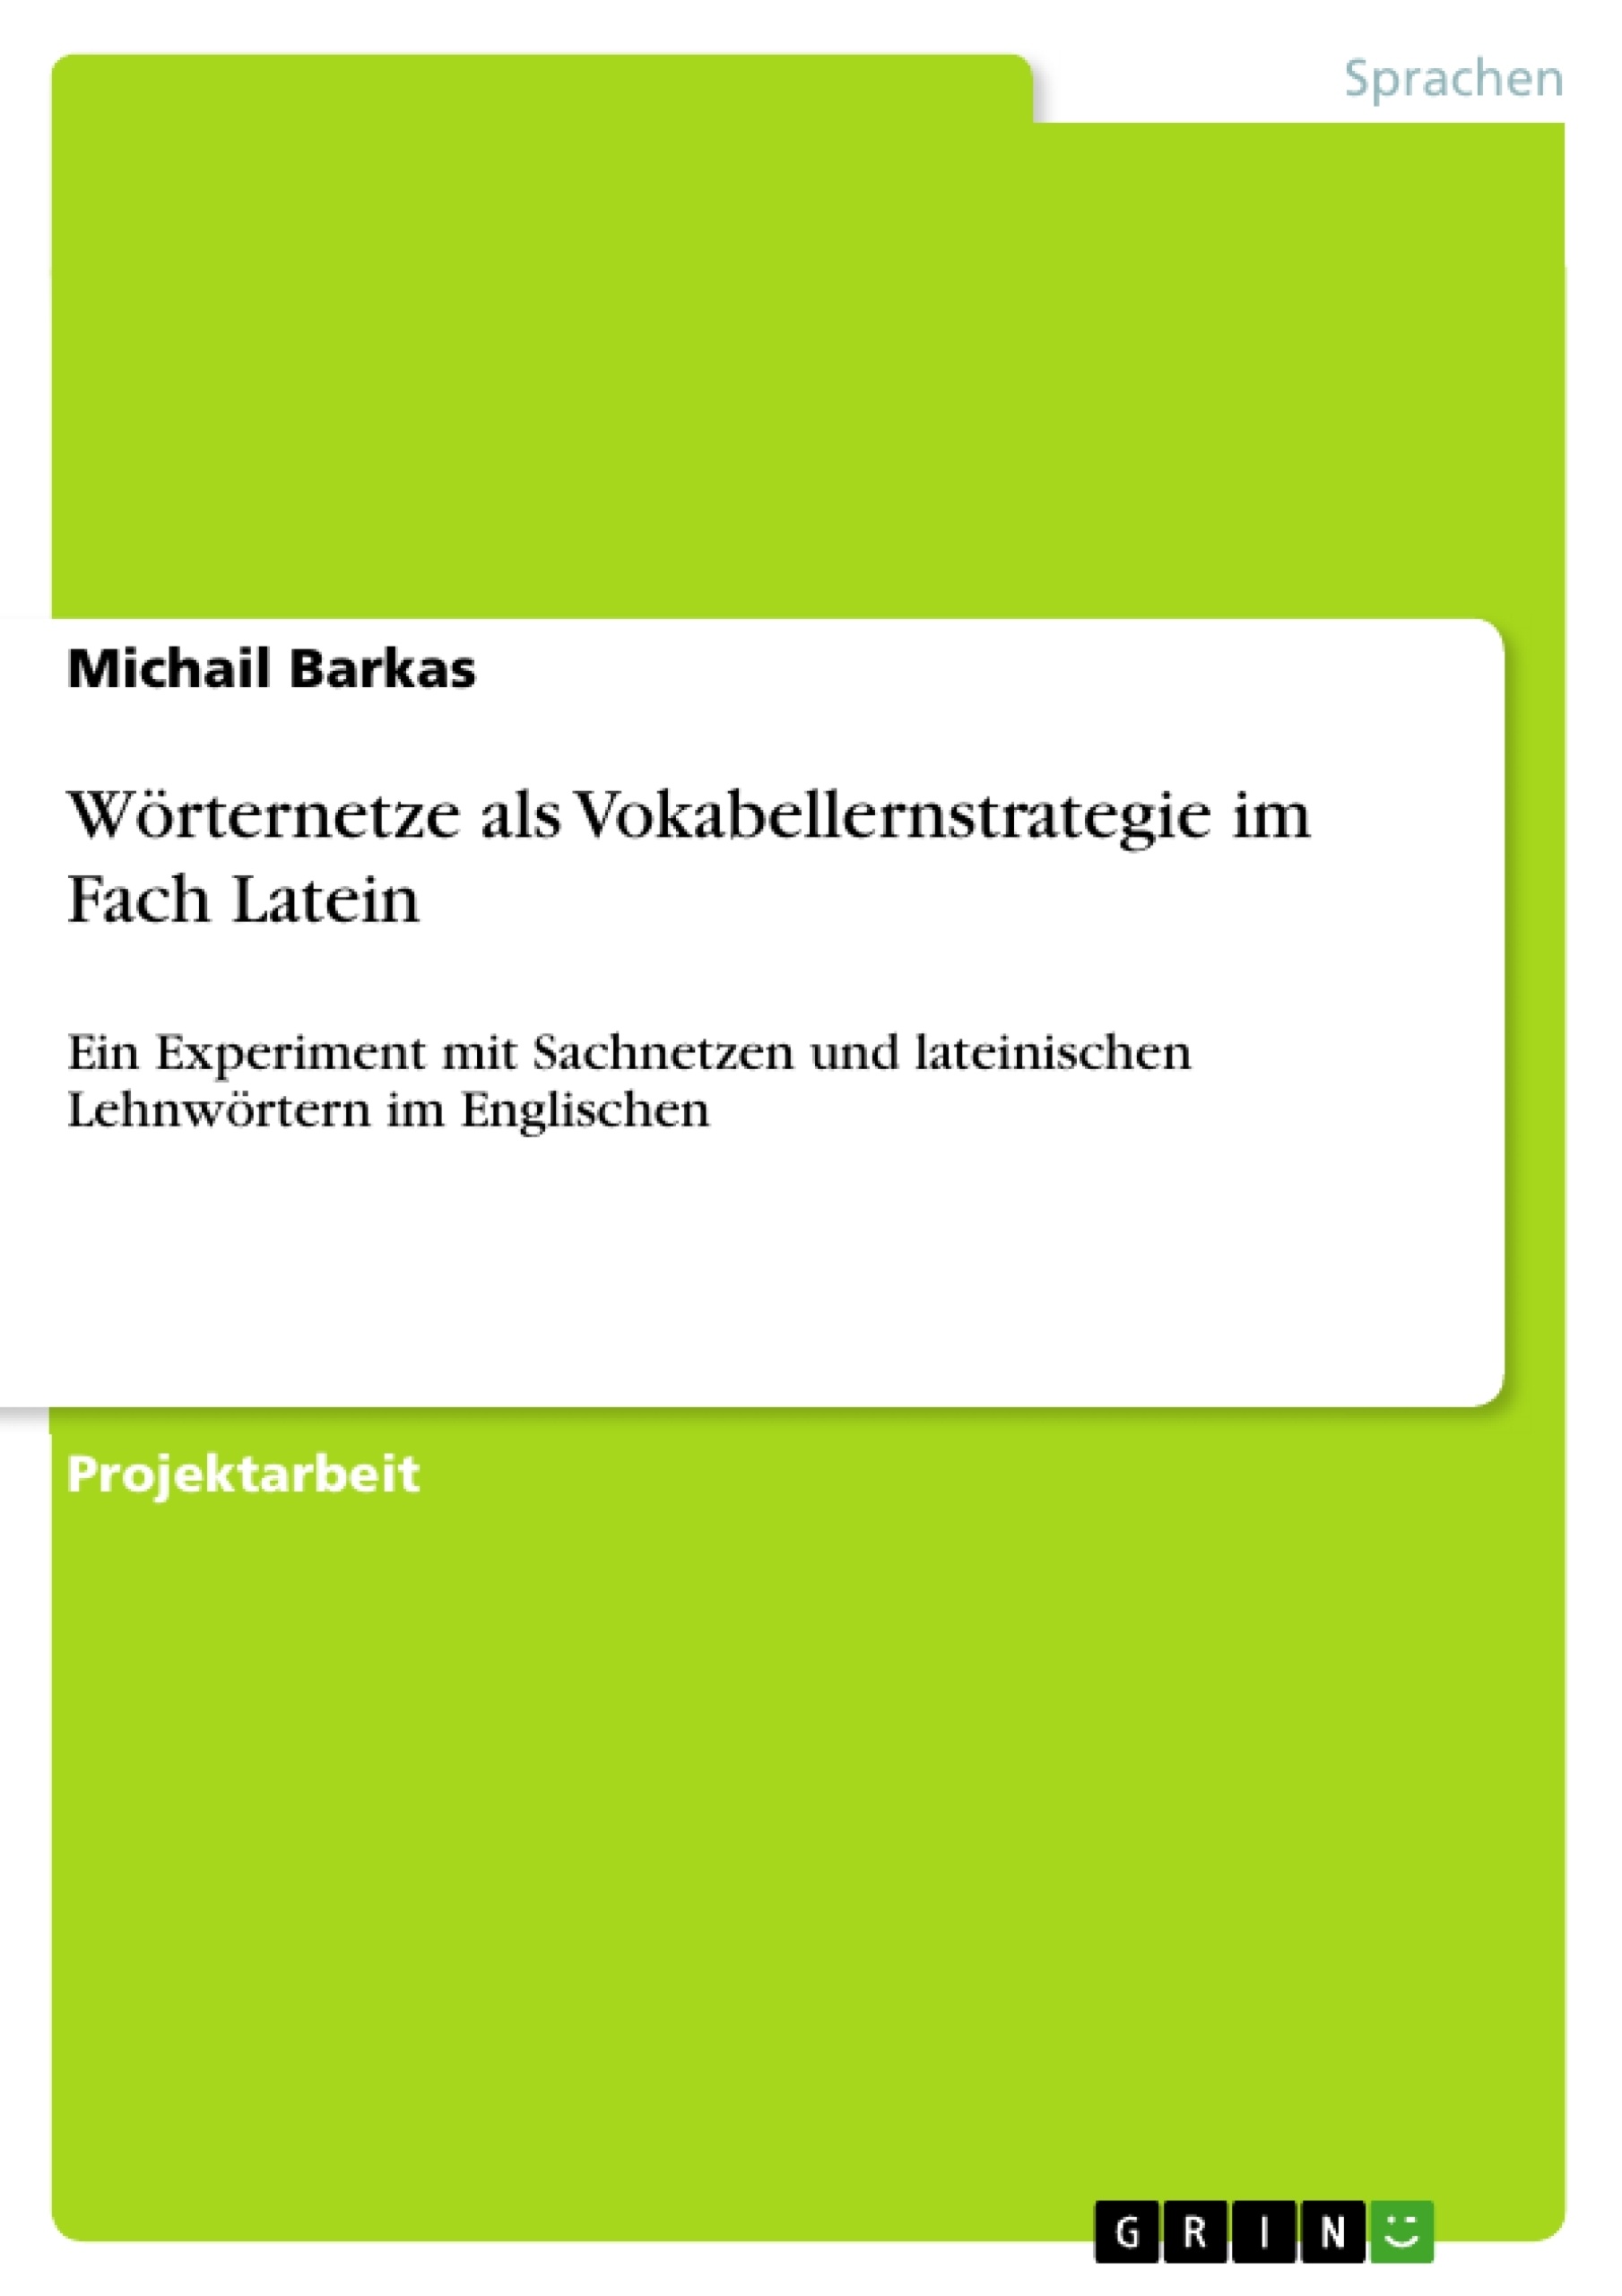 Title: Wörternetze als Vokabellernstrategie im Fach Latein